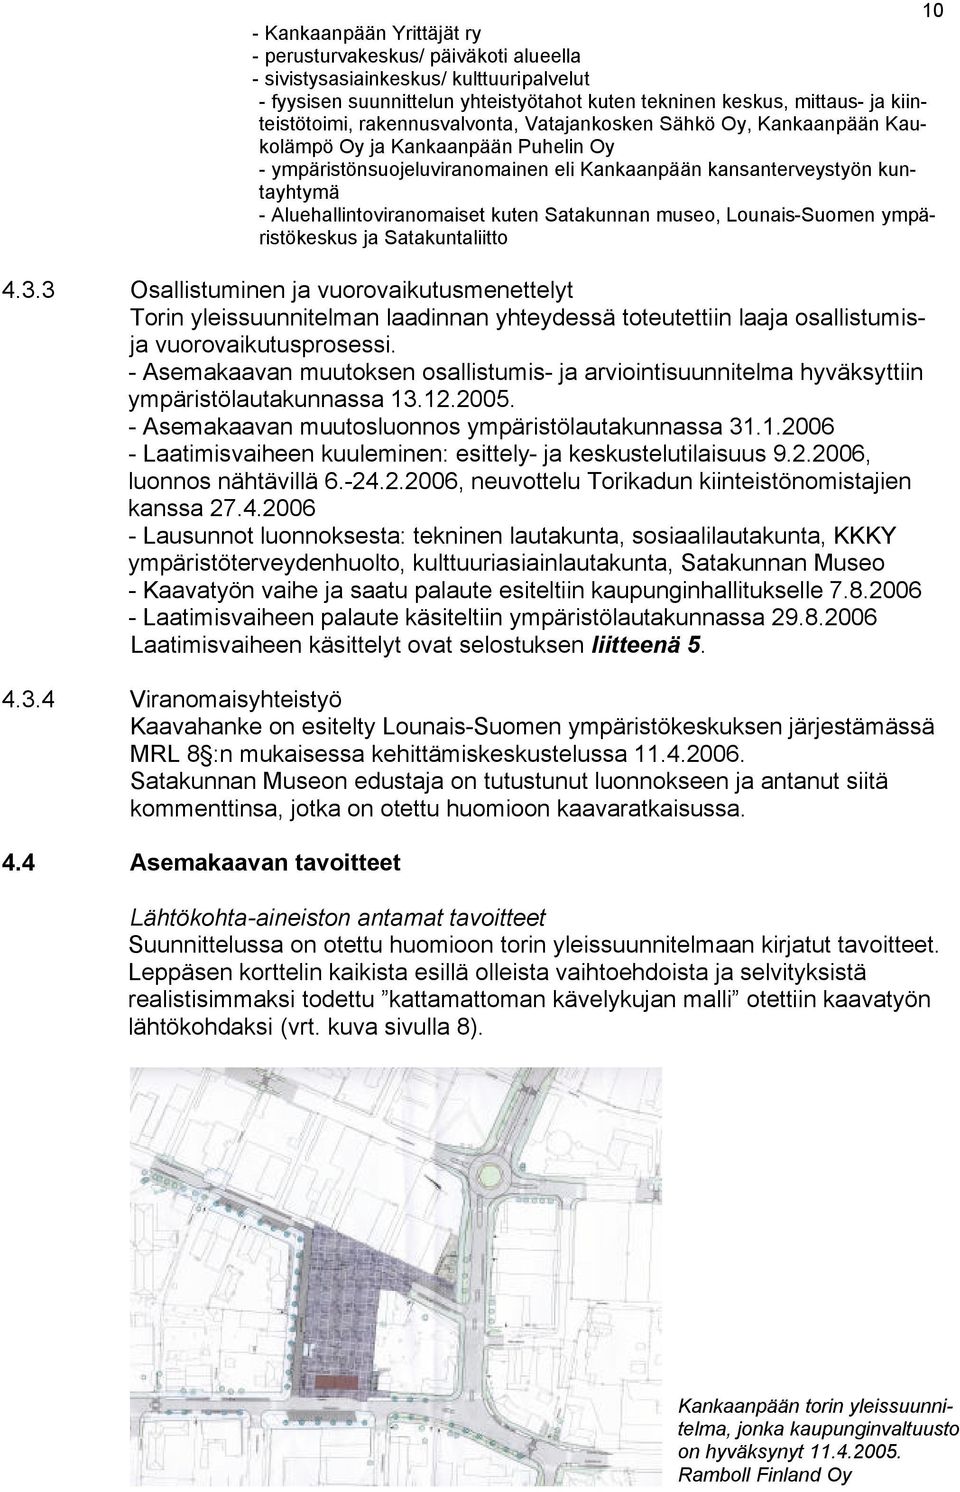 Aluehallintoviranomaiset kuten Satakunnan museo, Lounais-Suomen ympäristökeskus ja Satakuntaliitto 4.3.